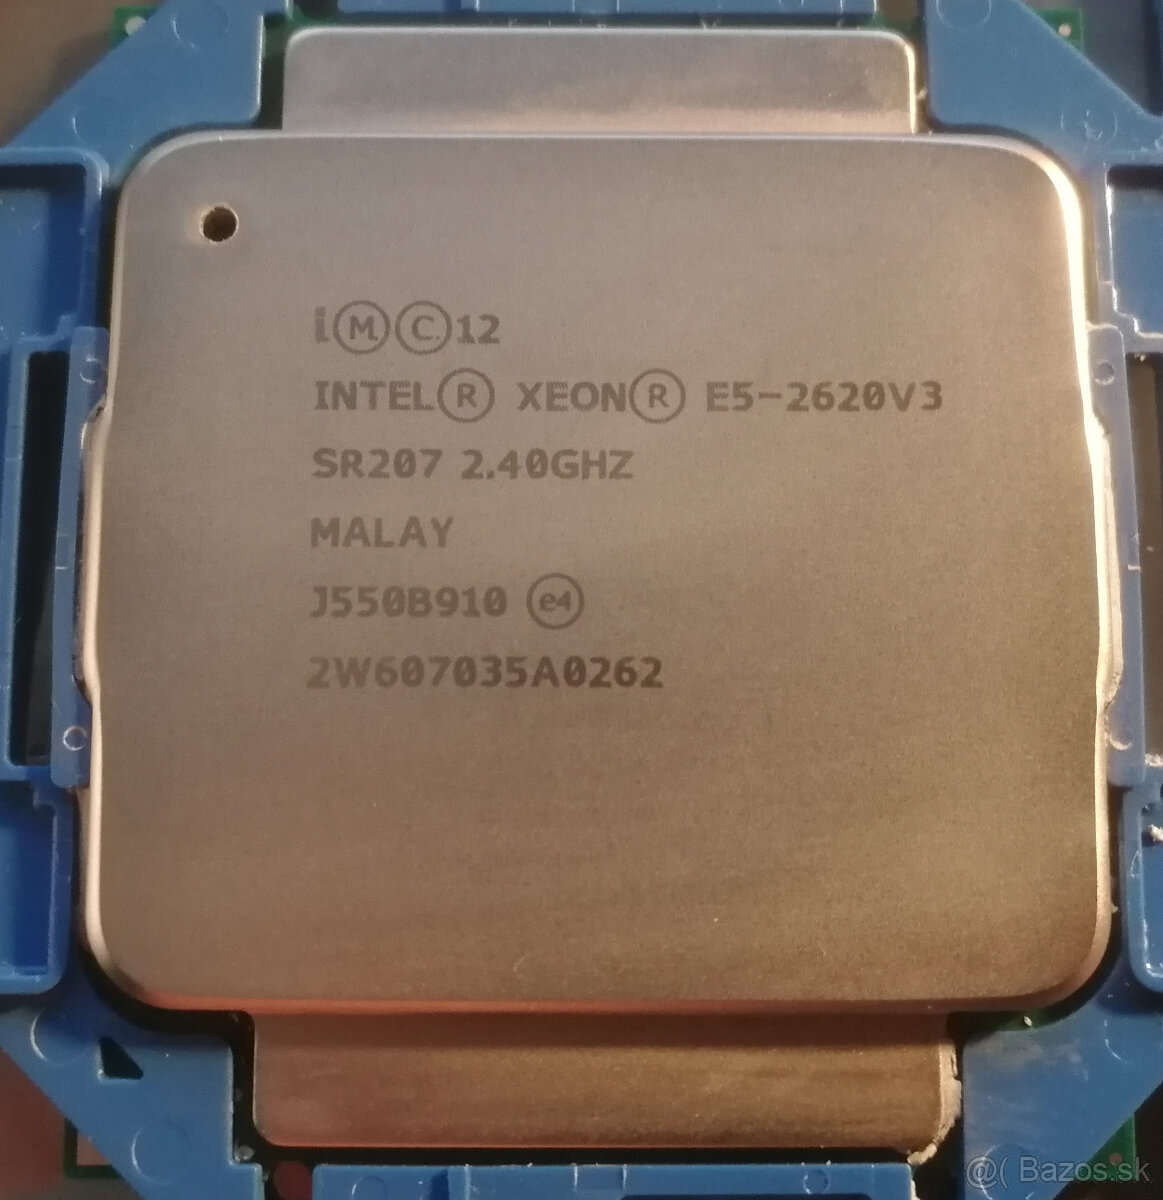 Intel Xeon E5-2620 v3 Hexa-core (6 Core) 2.40 GHz Processor